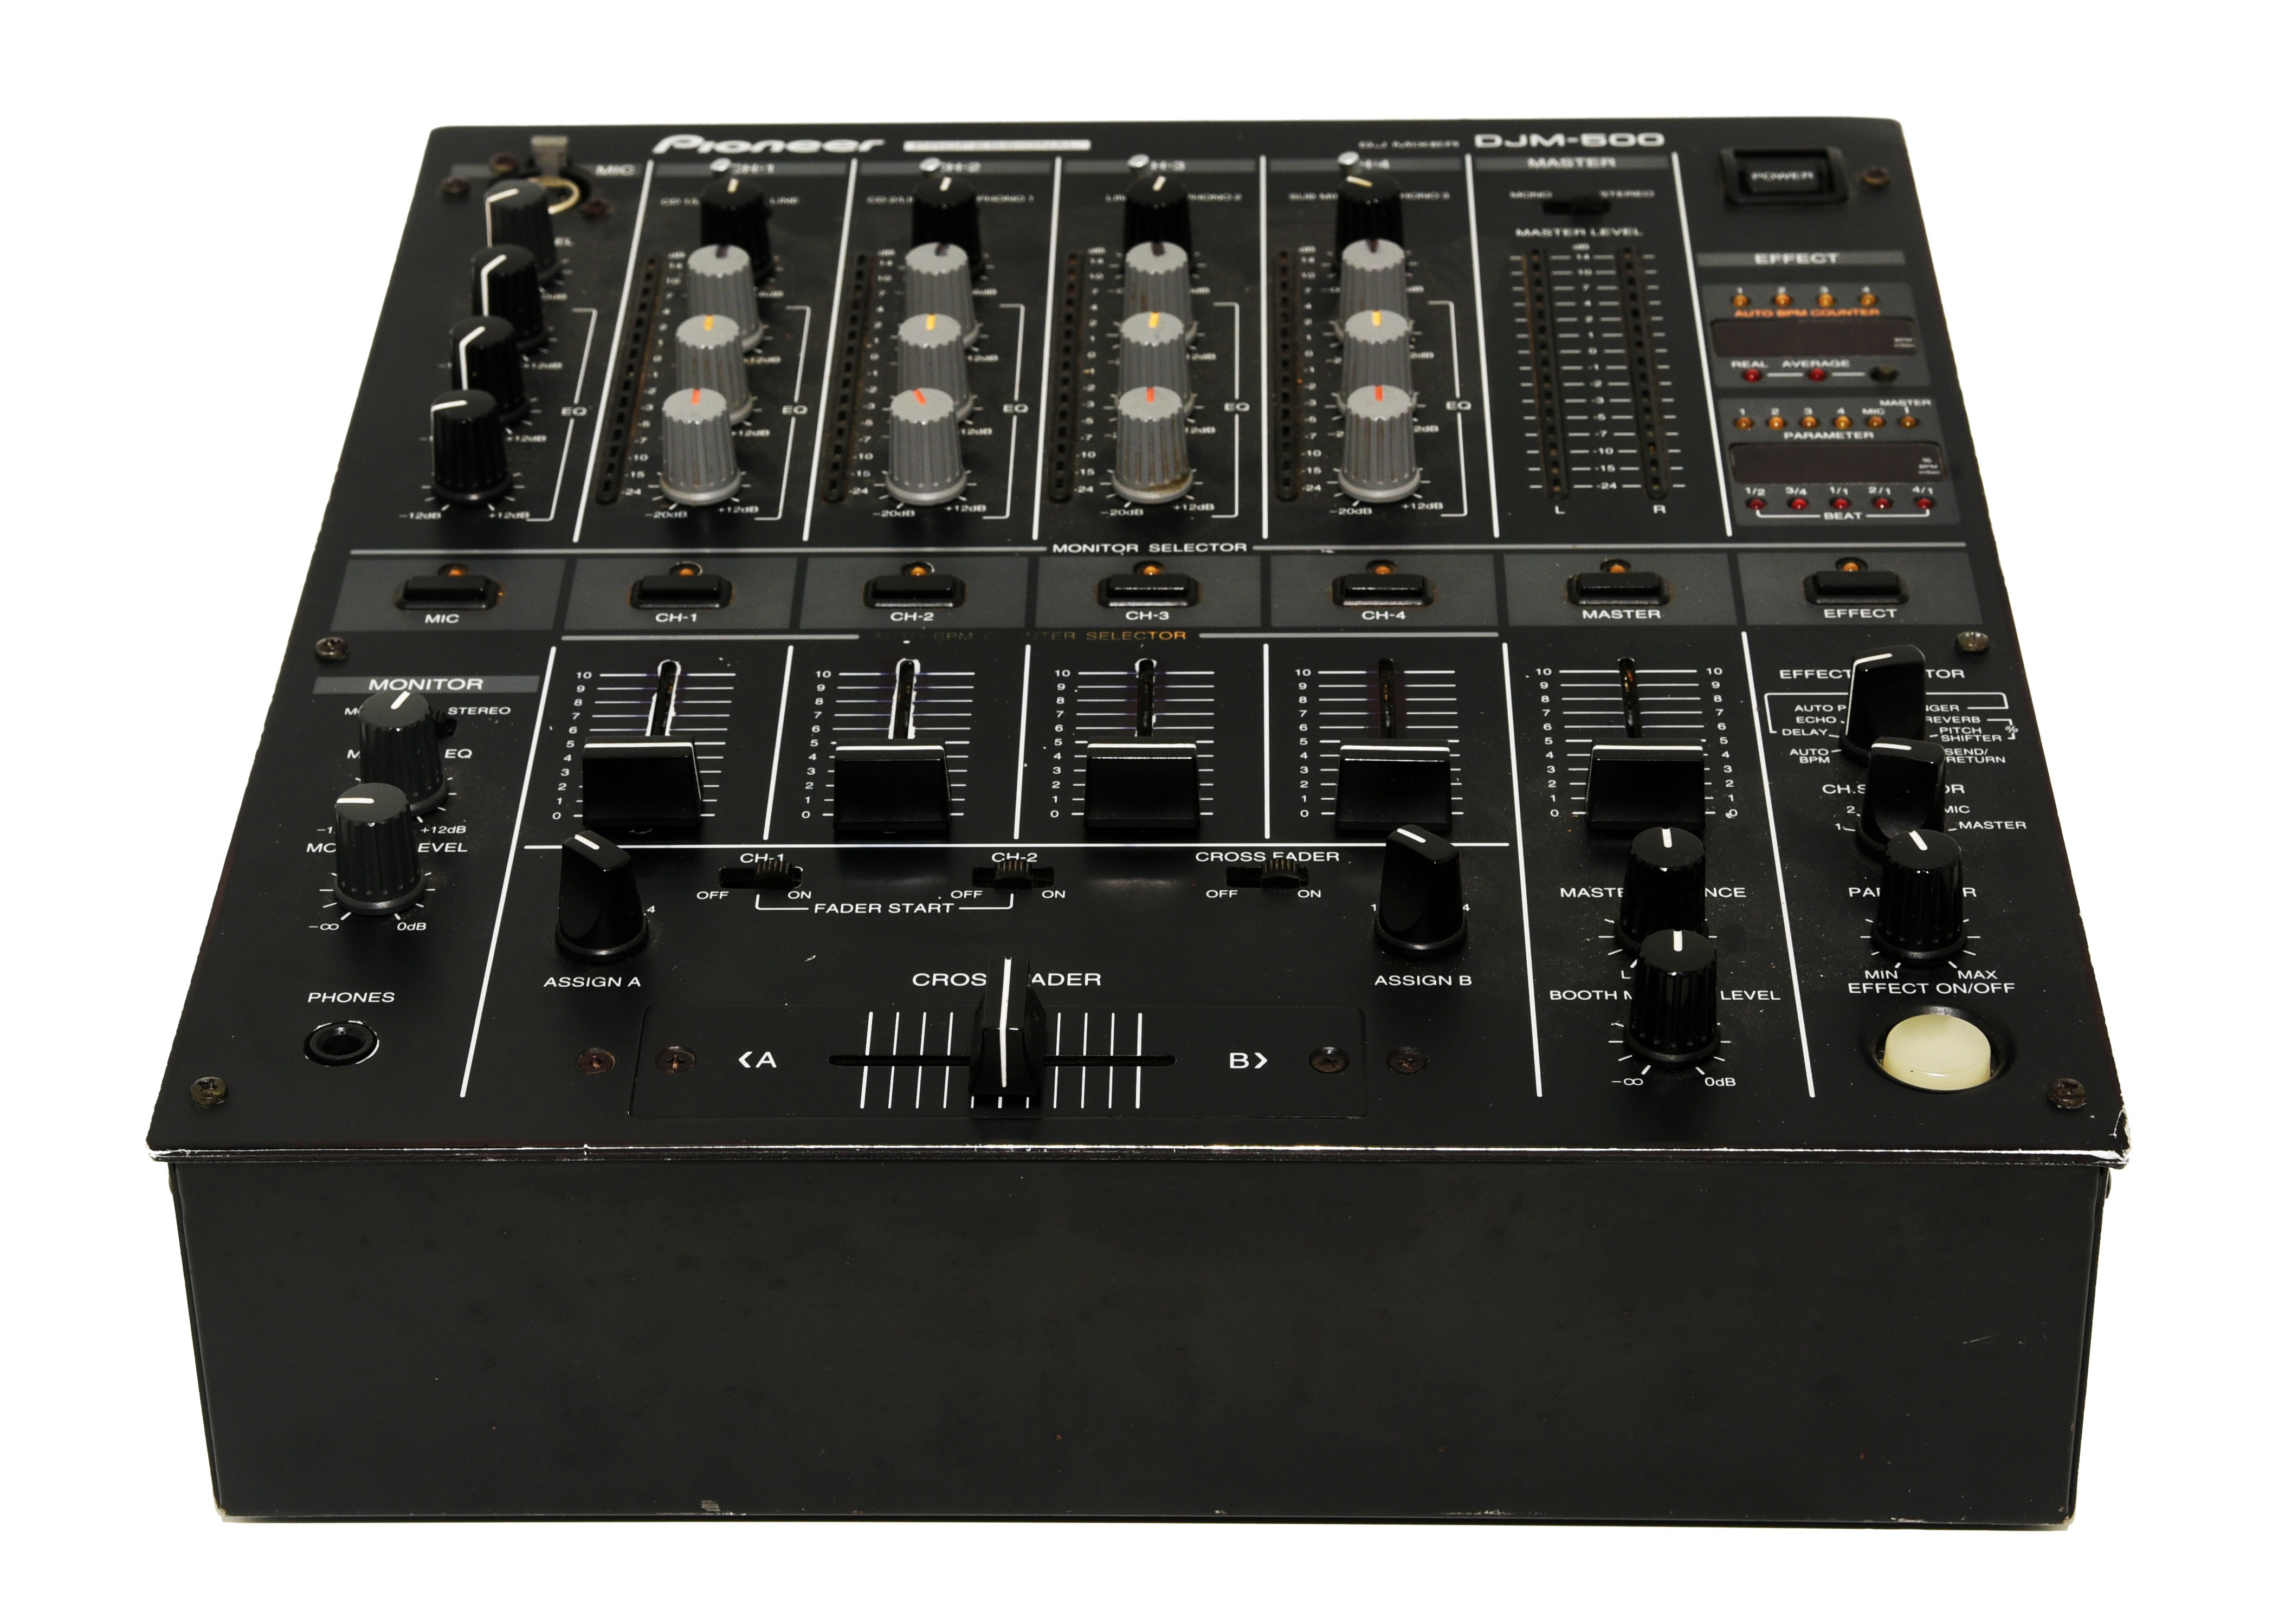 Mesa de Mezclas DJ PIONEER DJM-500 de 4 Canales con efectos de